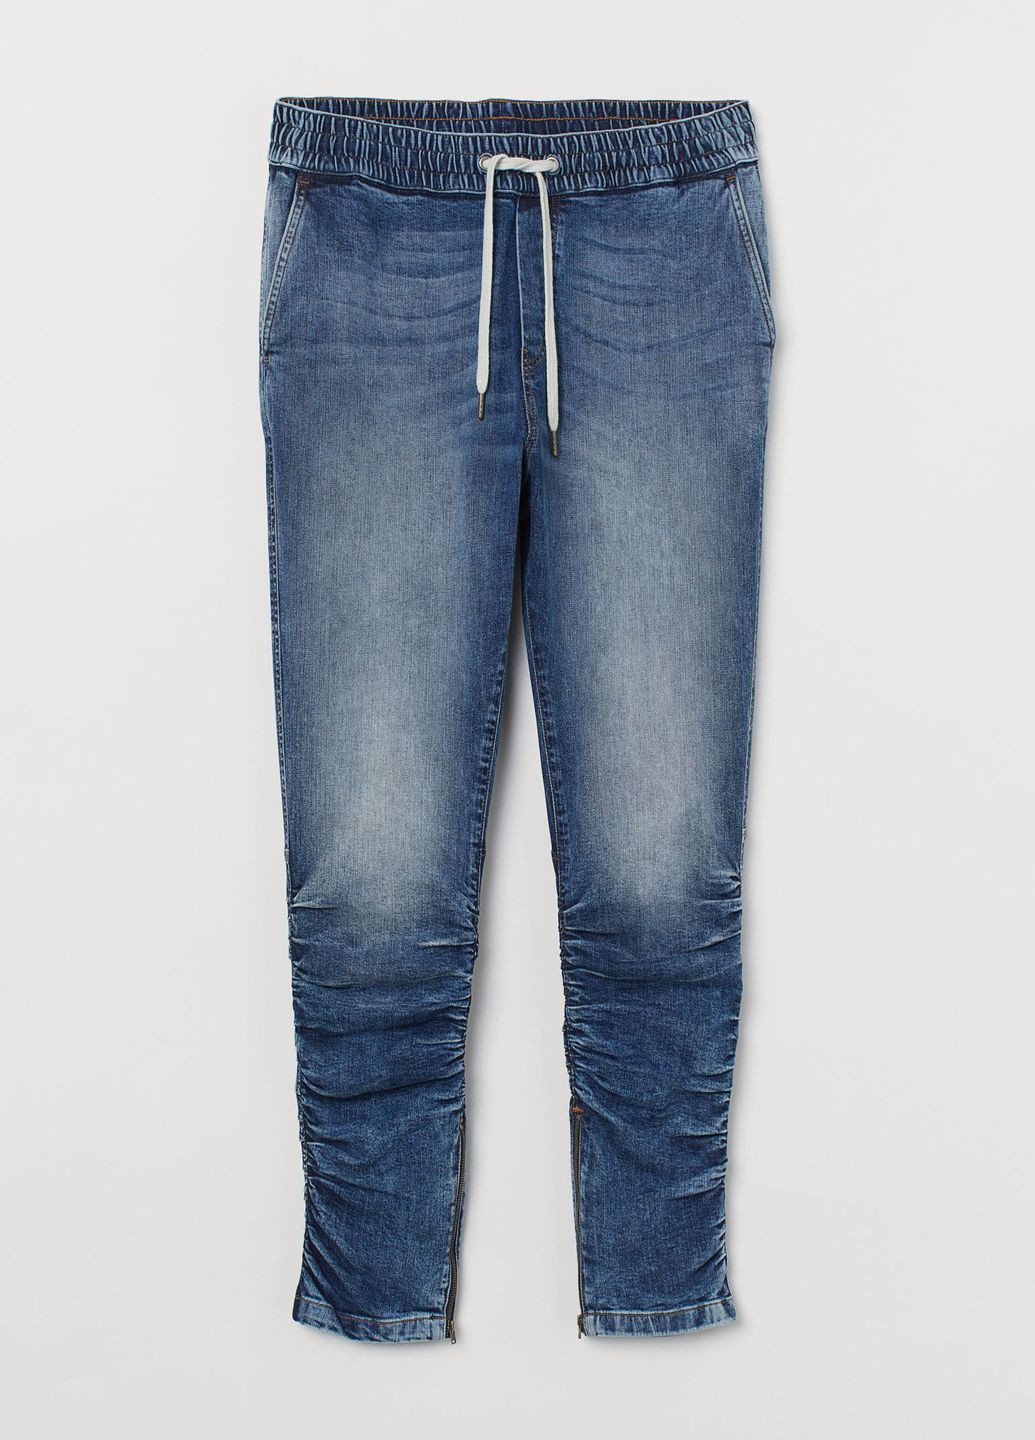 Синие демисезонные зауженные узкие джинсовые джоггеры синий деним демисезон H&M